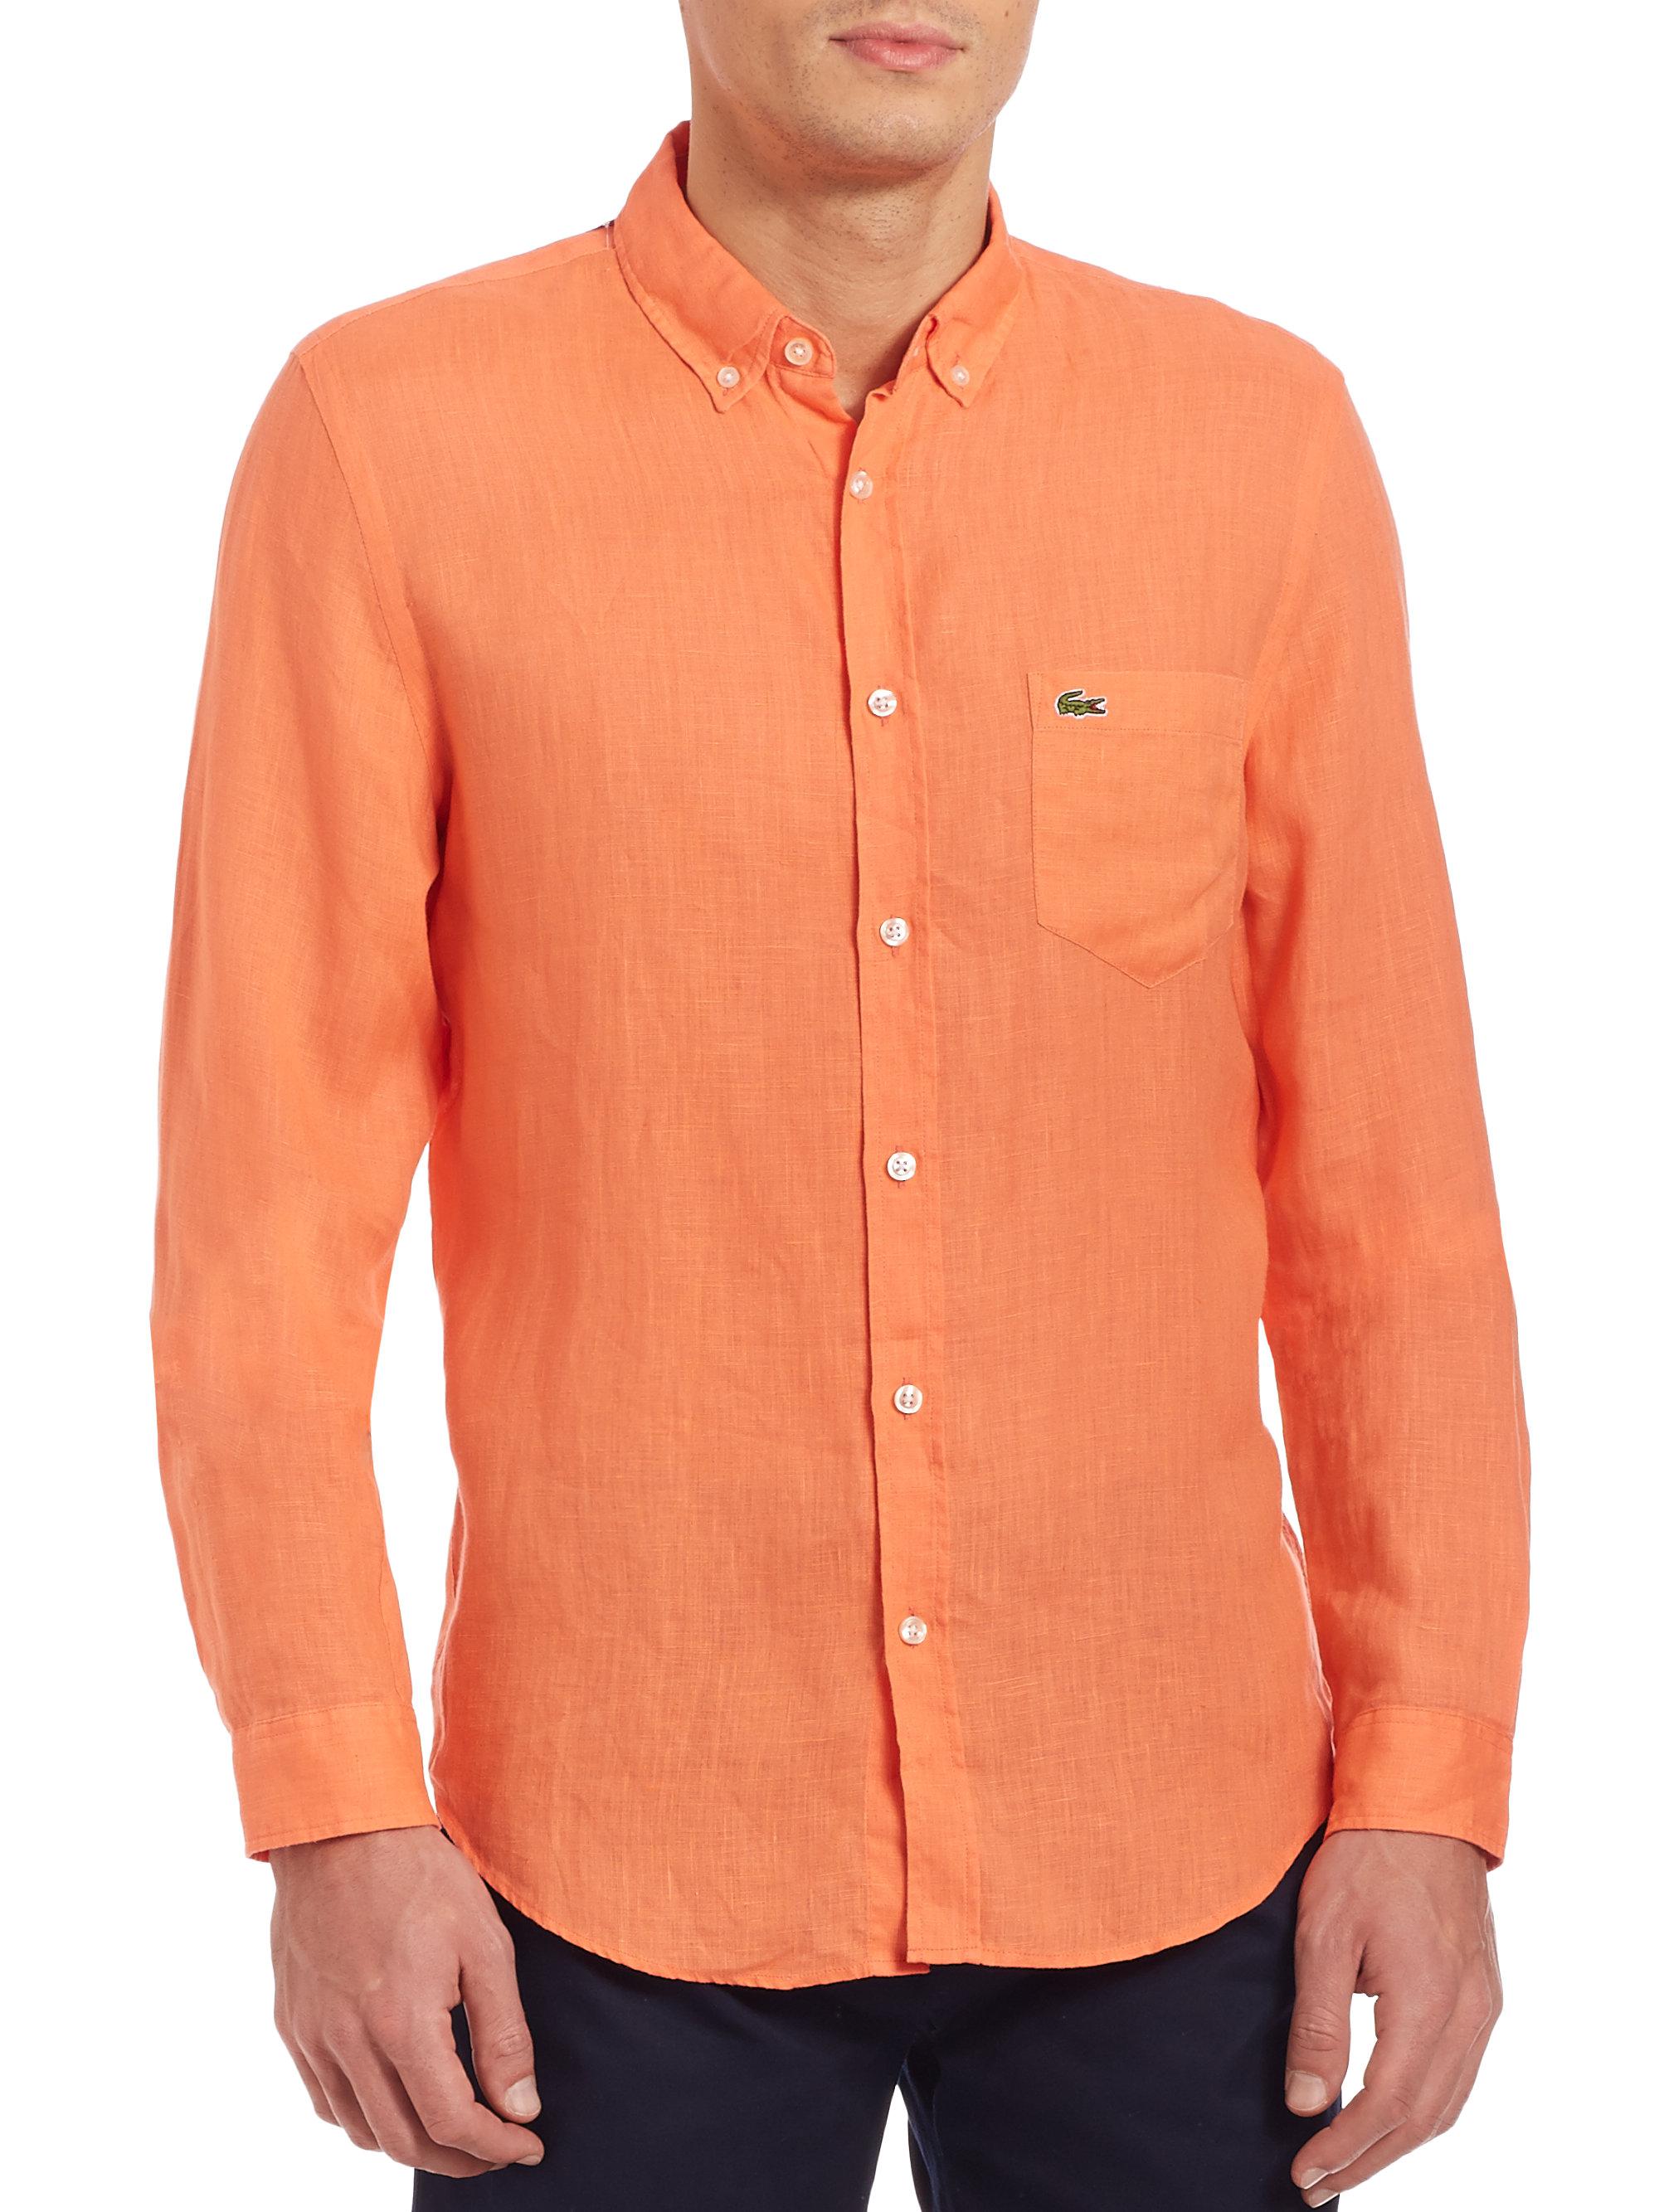 lacoste orange shirt